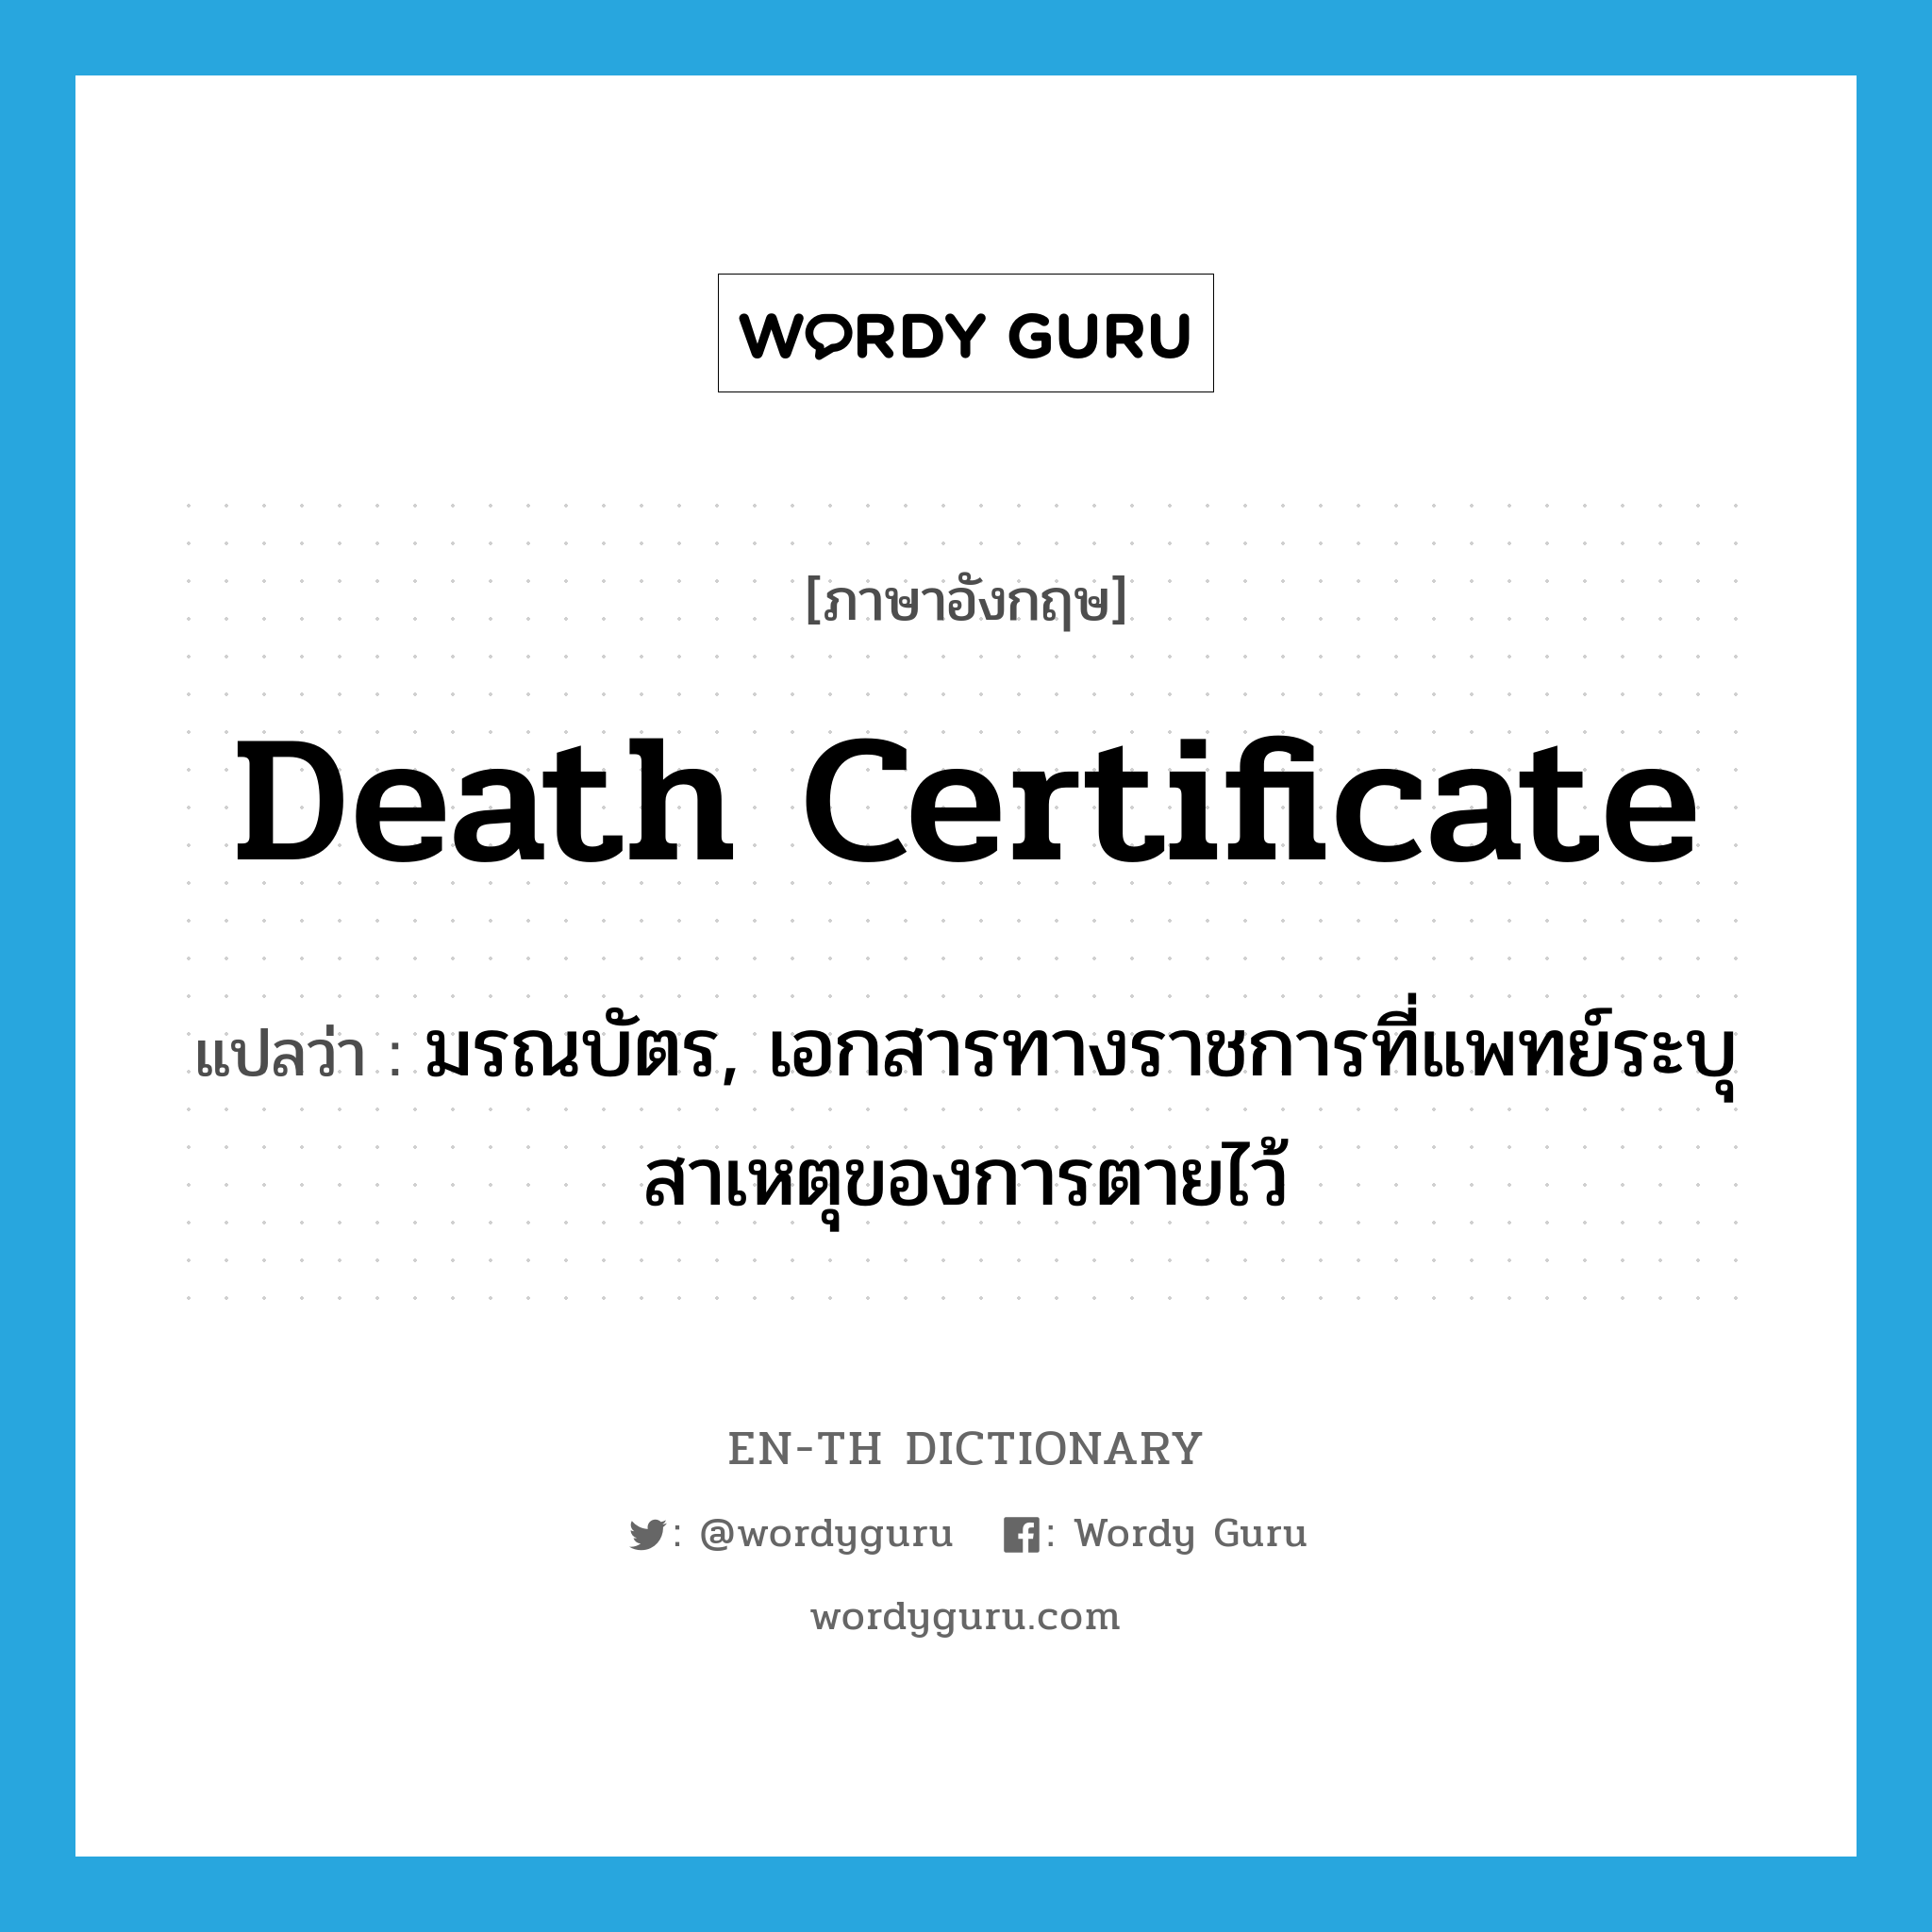 มรณบัตร, เอกสารทางราชการที่แพทย์ระบุสาเหตุของการตายไว้ ภาษาอังกฤษ?, คำศัพท์ภาษาอังกฤษ มรณบัตร, เอกสารทางราชการที่แพทย์ระบุสาเหตุของการตายไว้ แปลว่า death certificate ประเภท N หมวด N